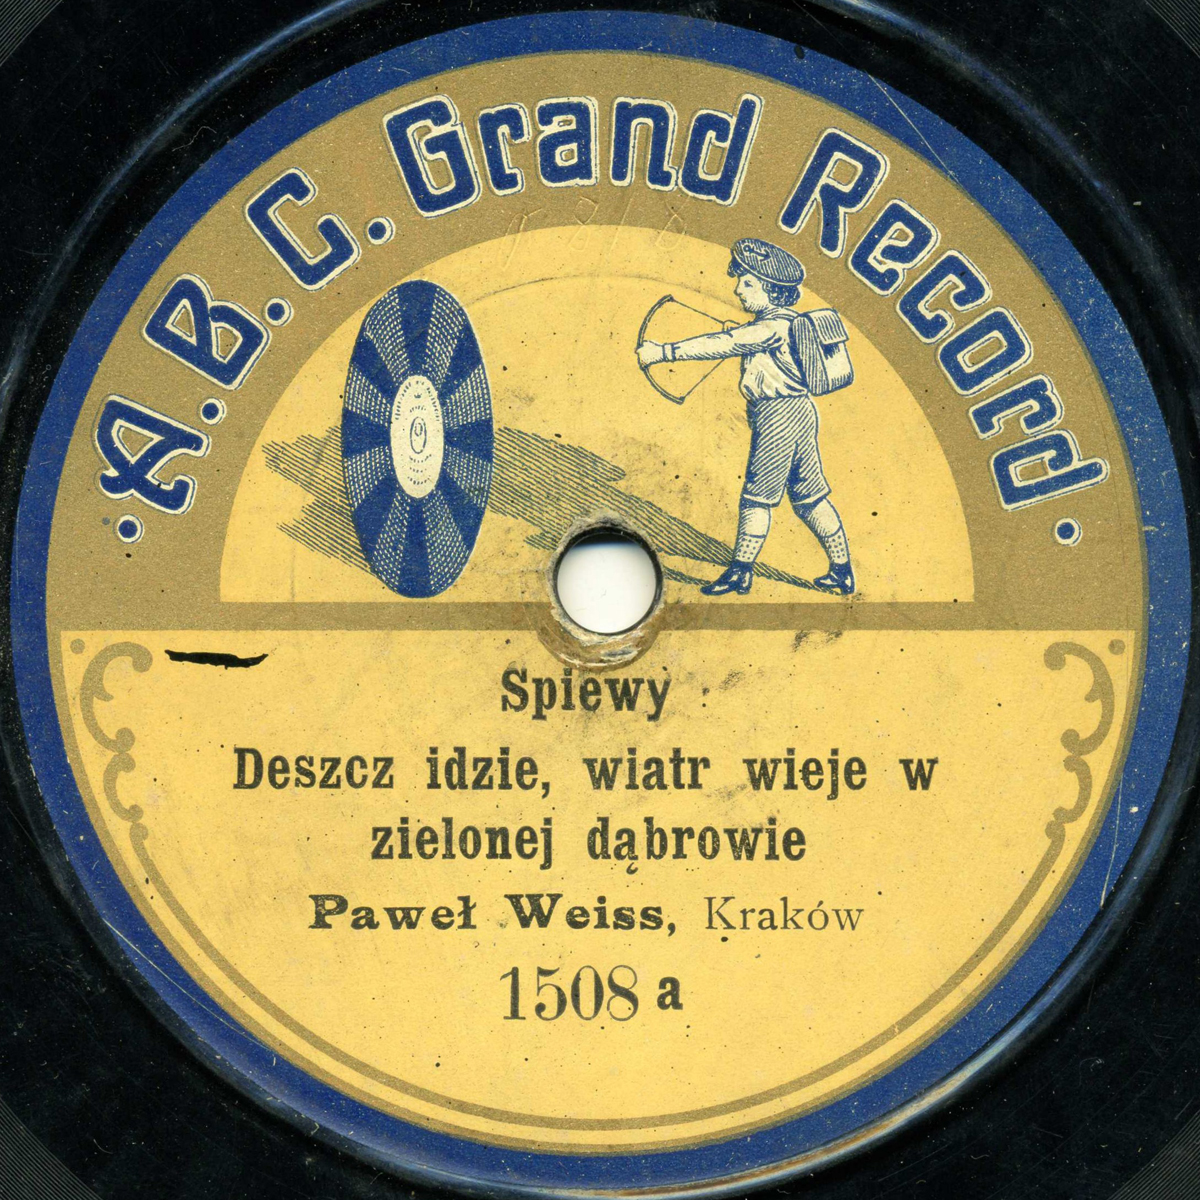 A.B.C. Grand Record